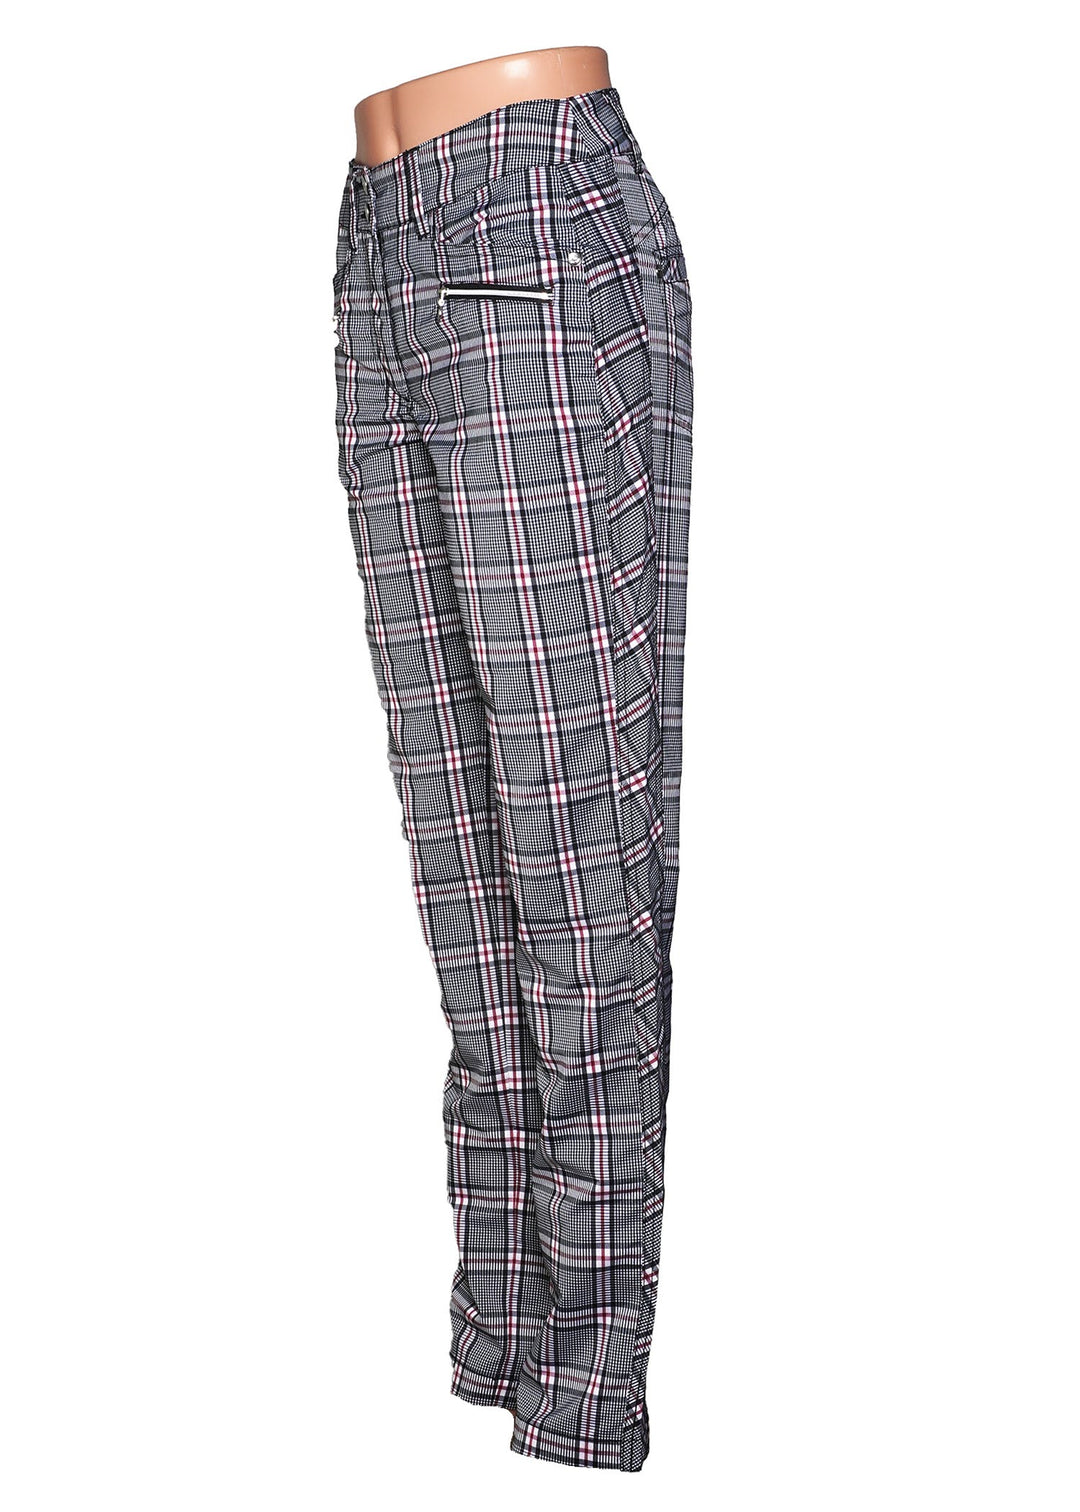 Daily Sports Cateya Golf Pants - Classic Black Plaid - Size 2 - Skorzie